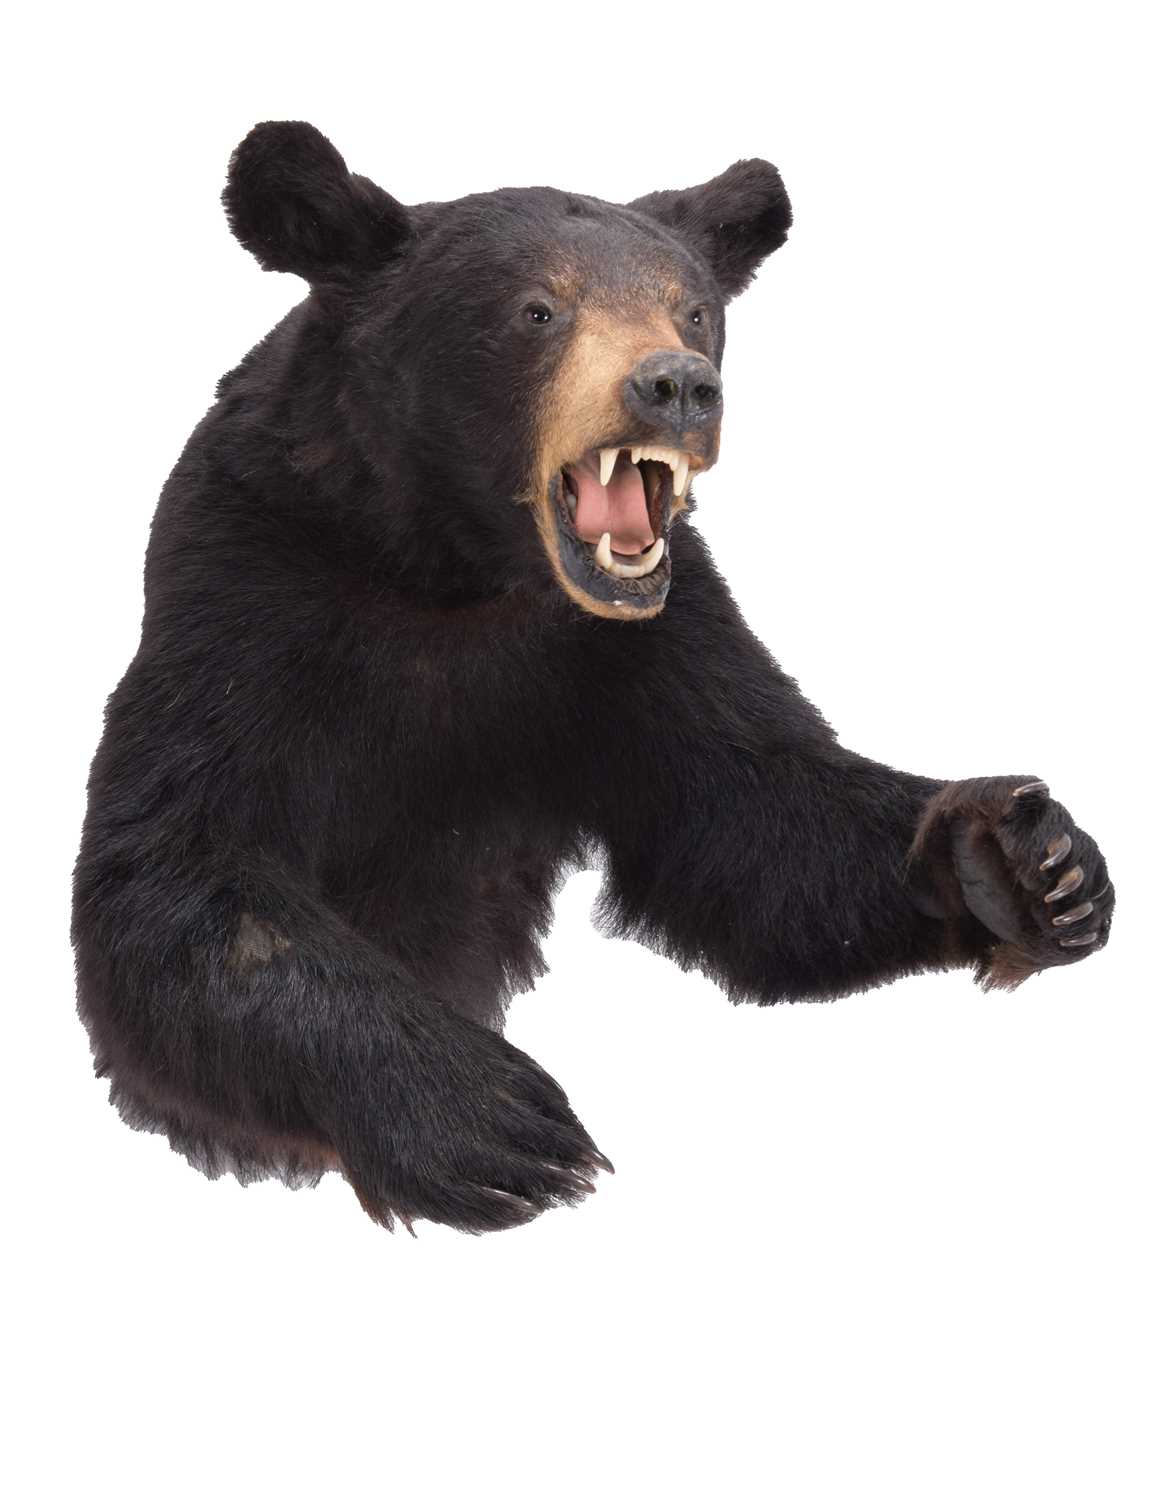 Lot 65 - Taxidermy: A North American Black Bear Half...